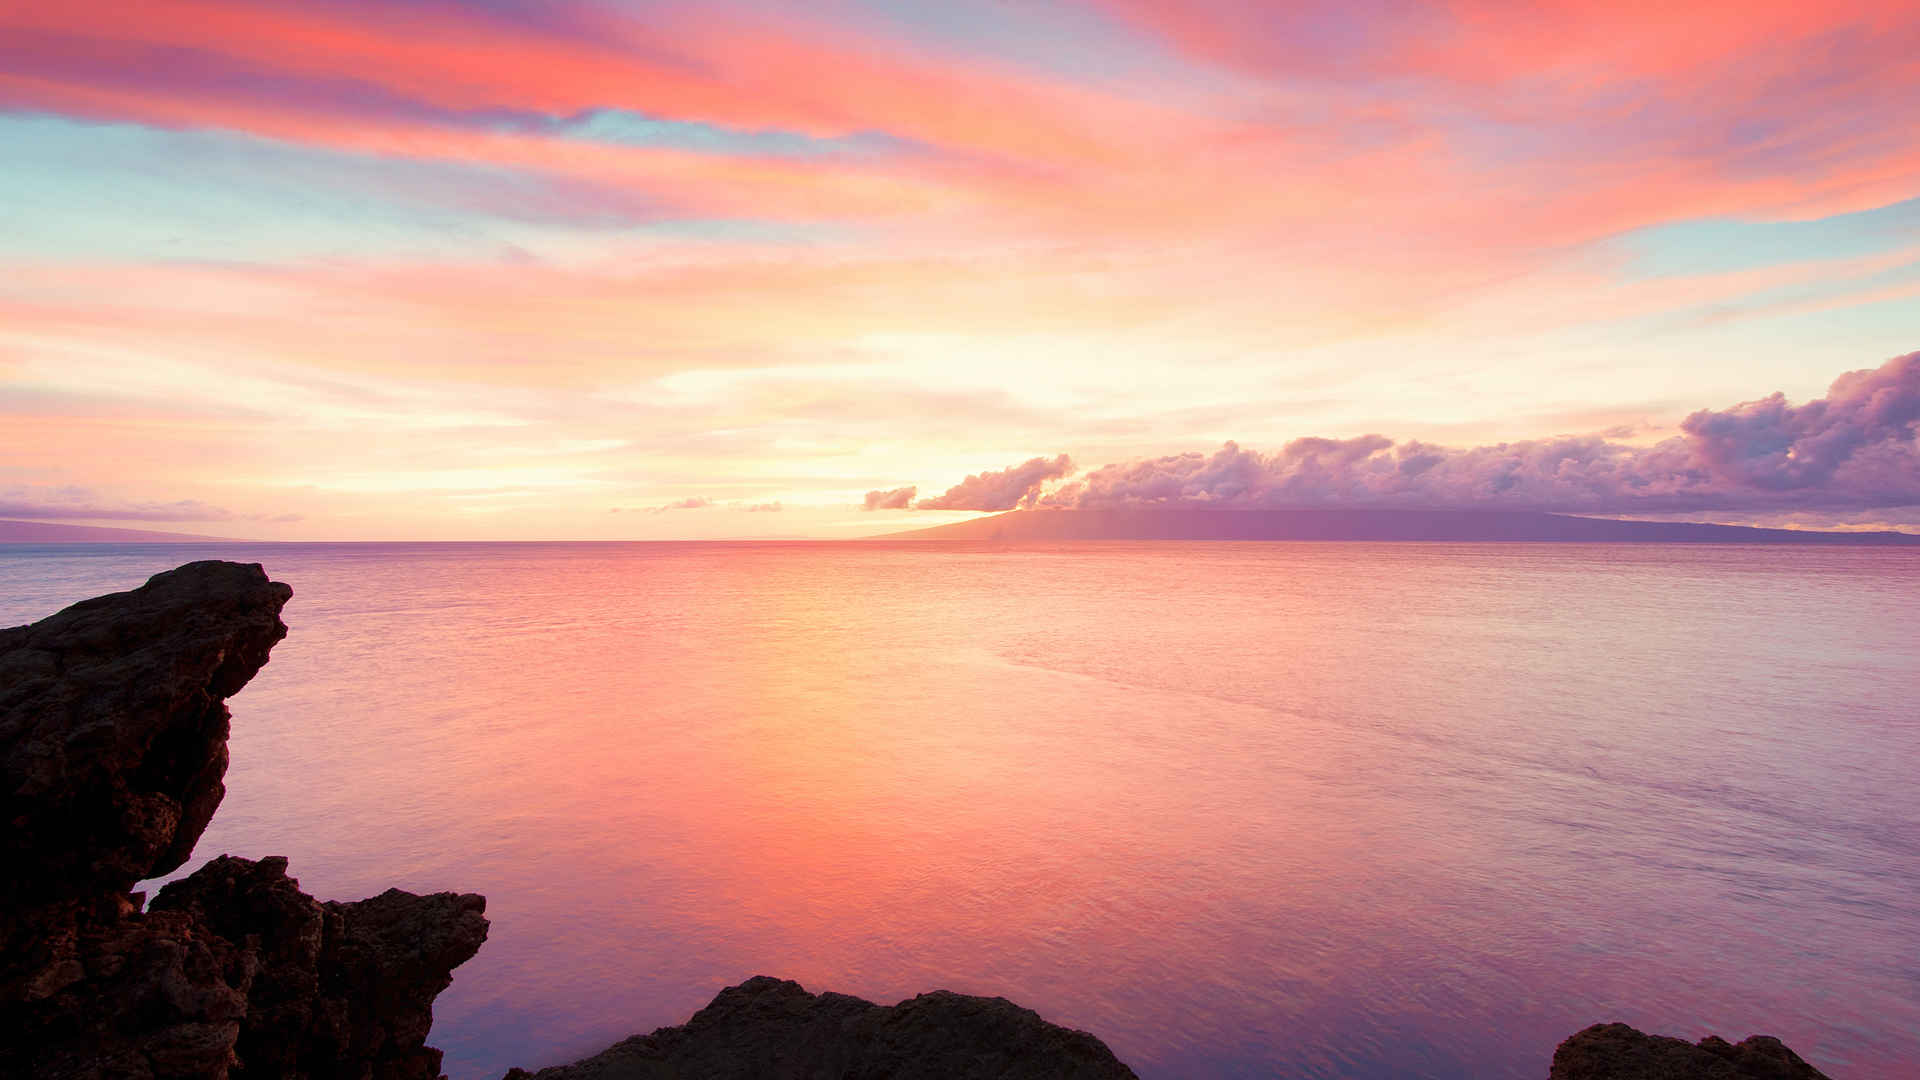 夏威夷毛伊岛海岸落日夕阳图片唯美-